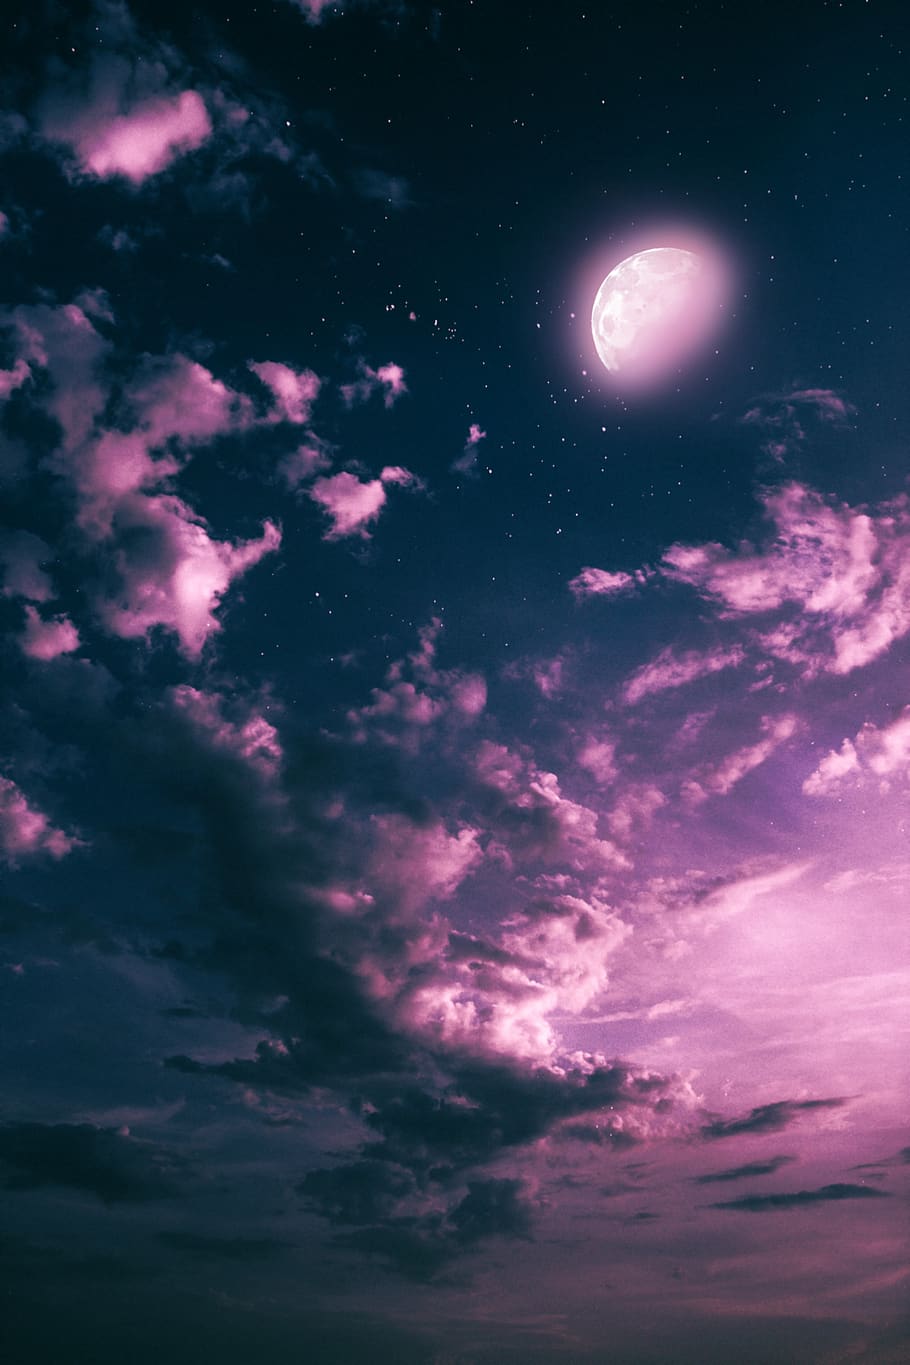 luna, noche, nubes, cielo, photoshop, fantasía, rosa, nube - cielo, espacio, astronomía